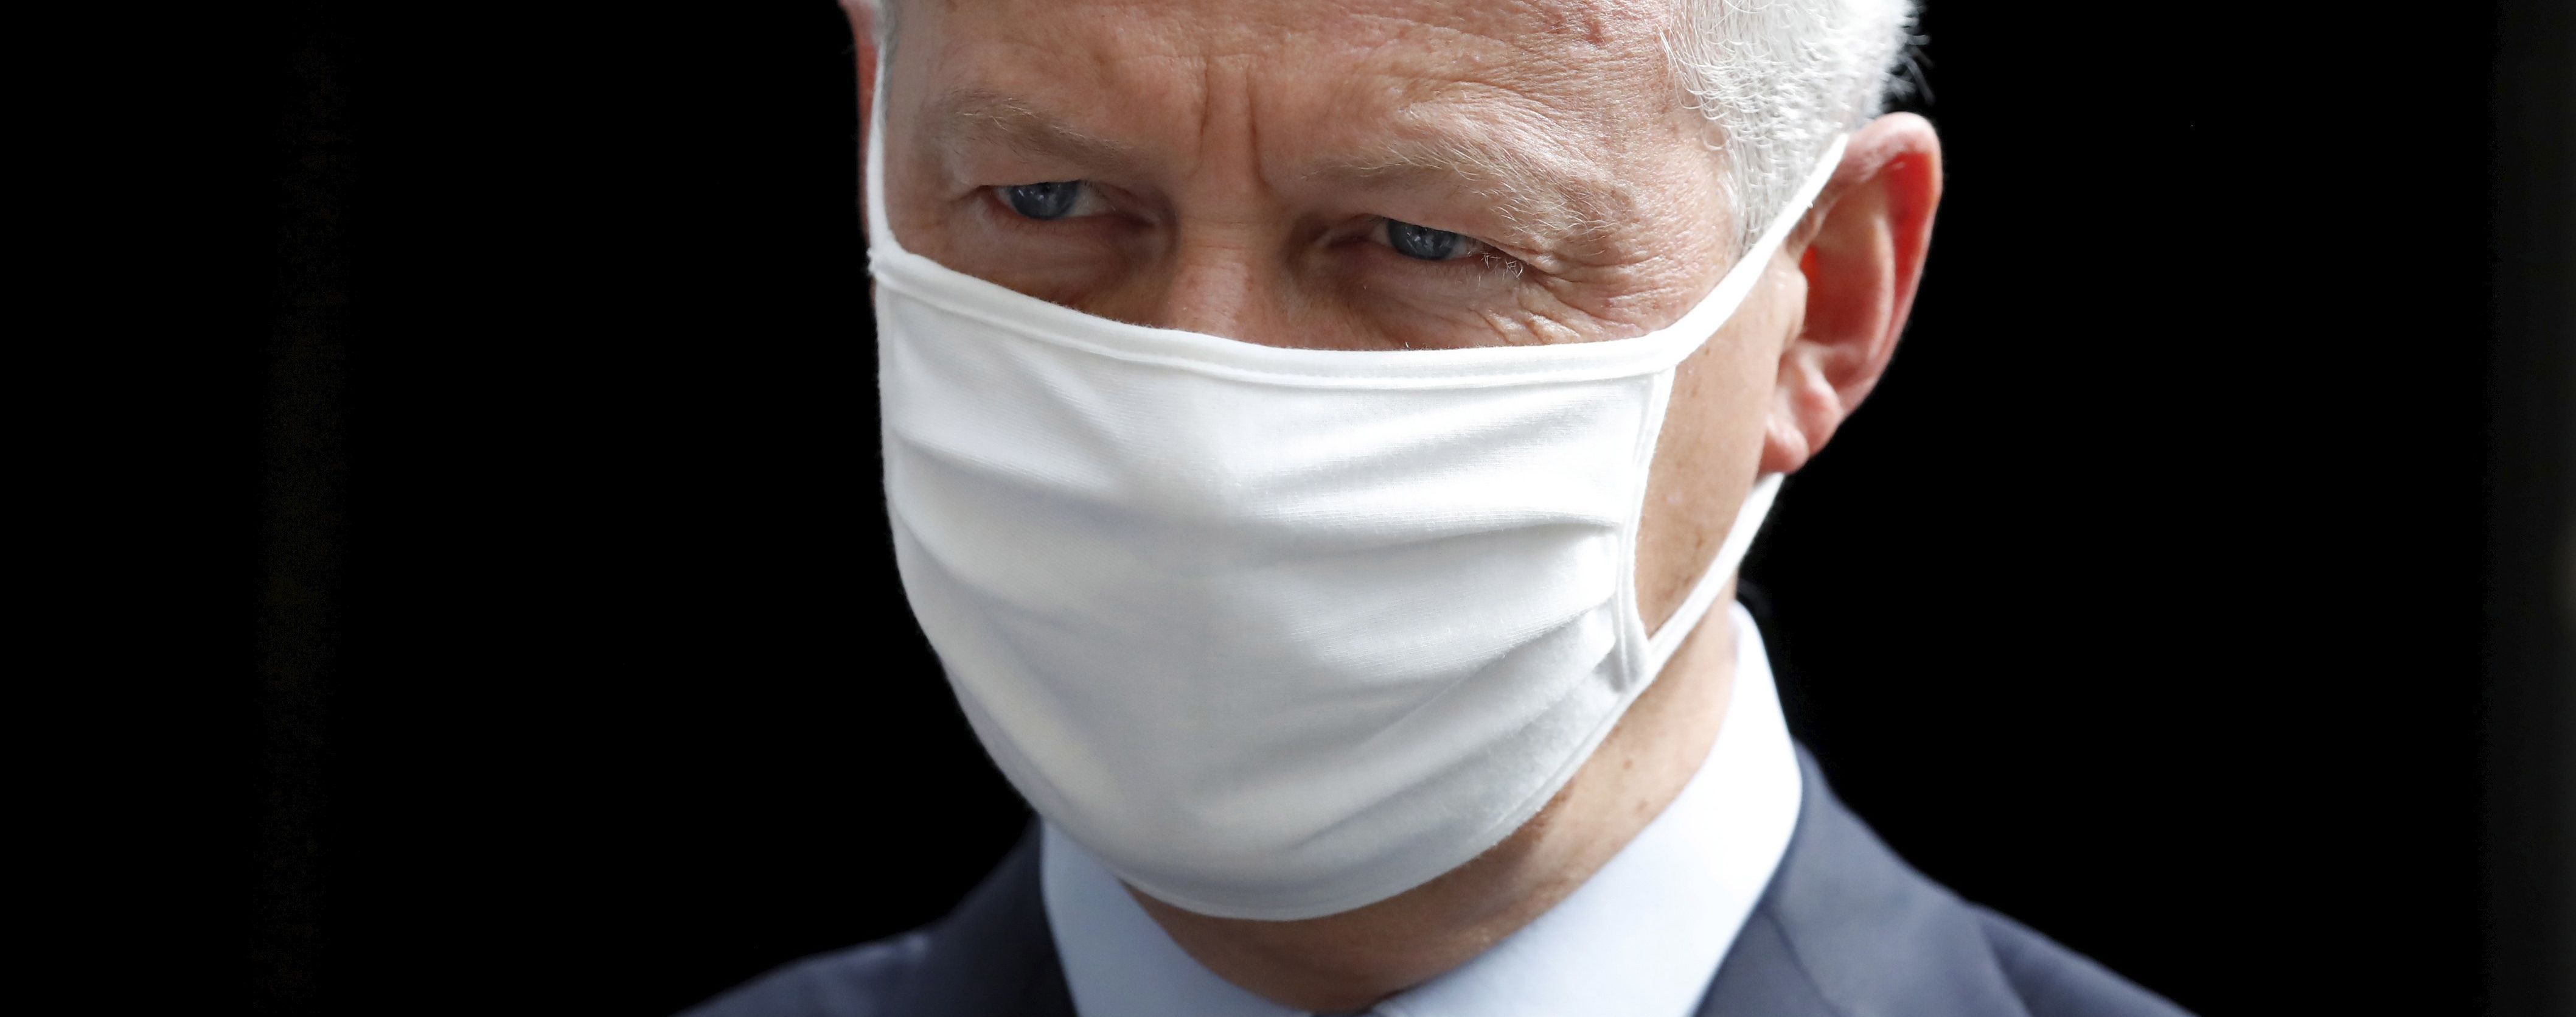 Министр экономики Франции заболел коронавирусом